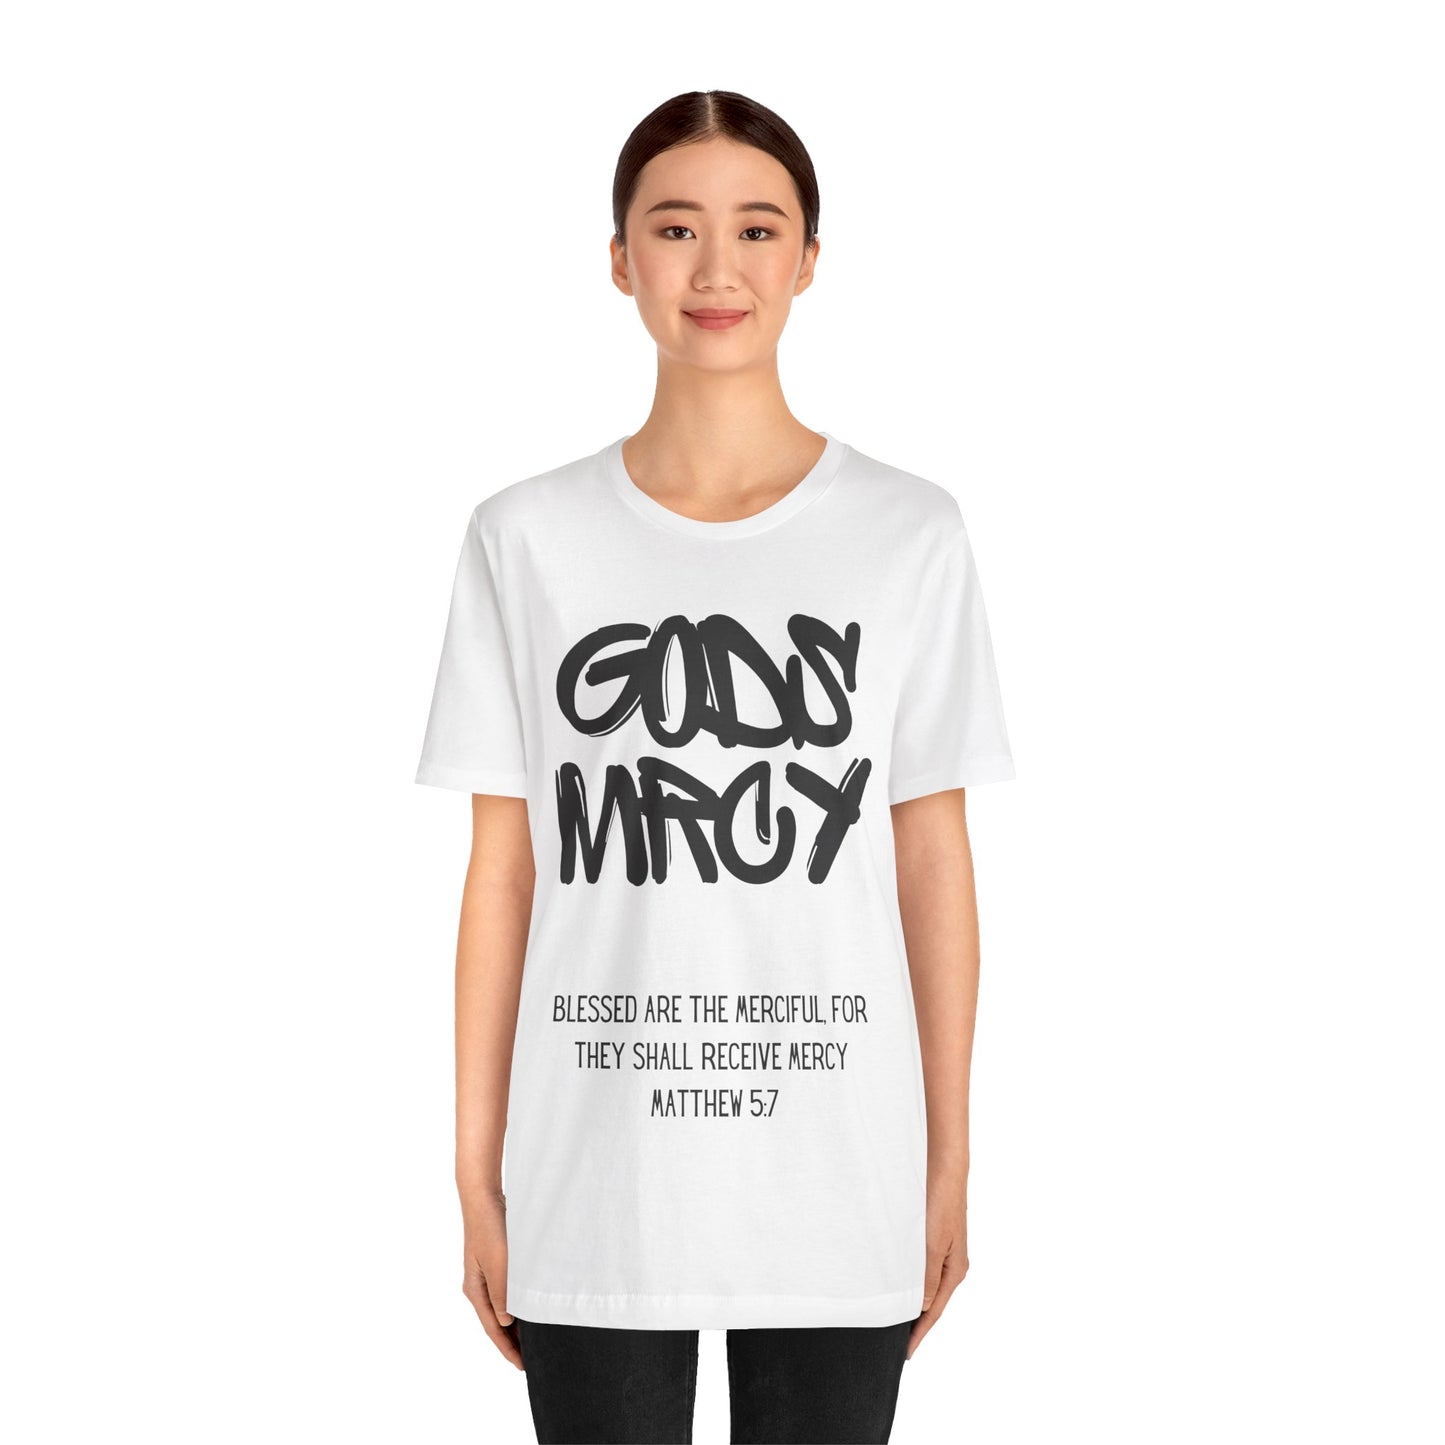 GODS MRCY T-Shirt